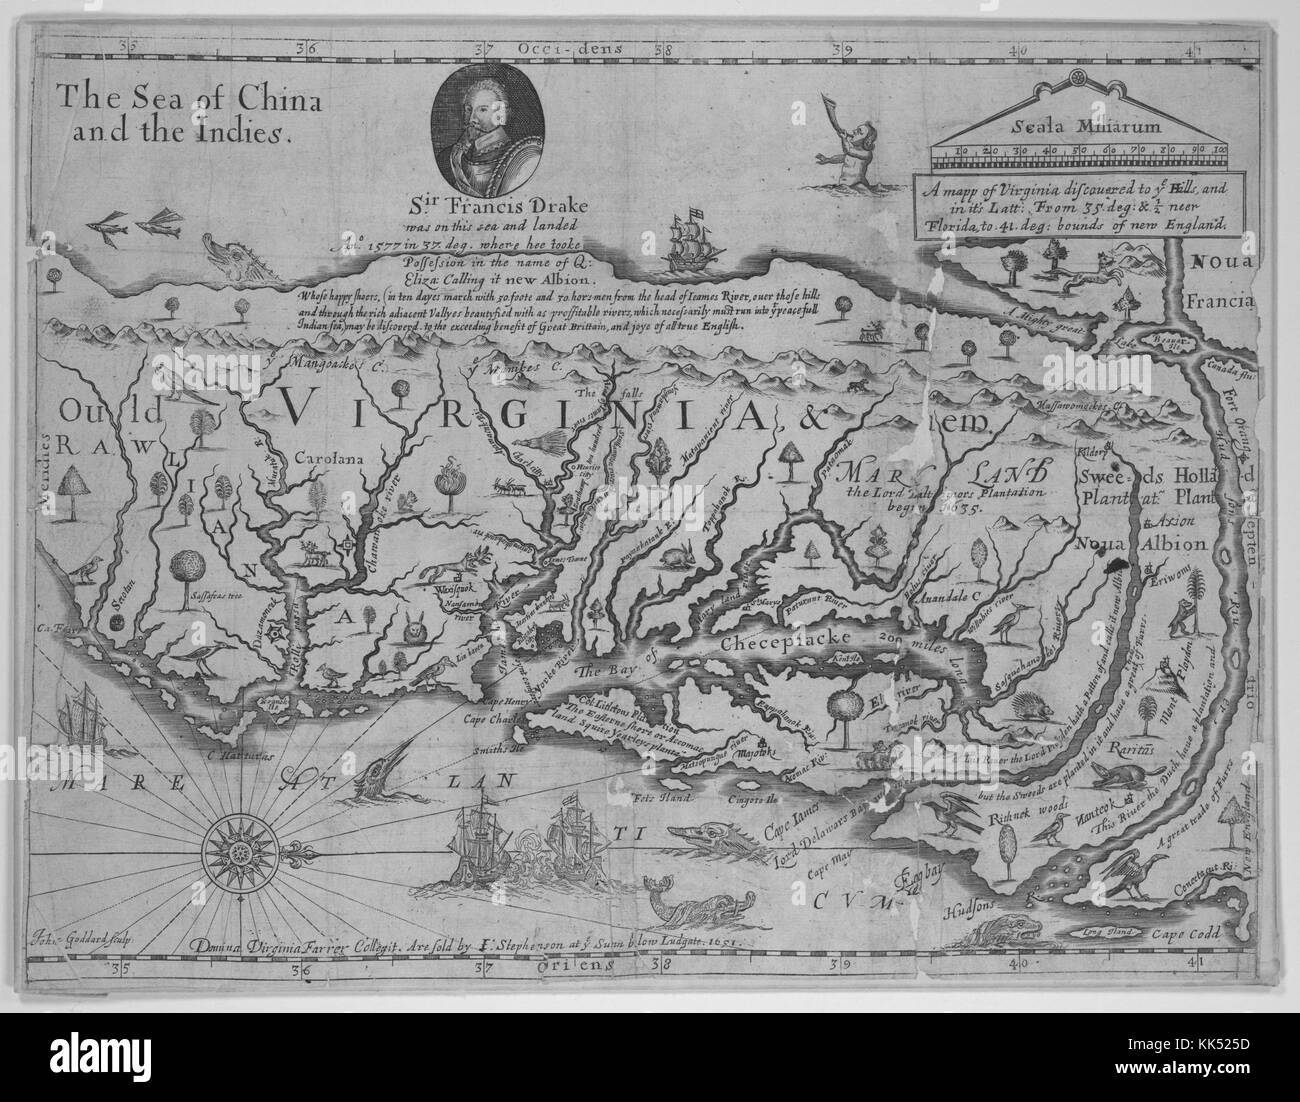 Mappa incisa della Virginia, raffigurante la Chesapeake Bay, l'Oceano Atlantico e un ritratto di sir Francis Drake in un inserto in cima, mappa dal cartografo Giovanni farrer, inciso da John goddard, Virginia, 1651. dalla biblioteca pubblica di new york. Foto Stock